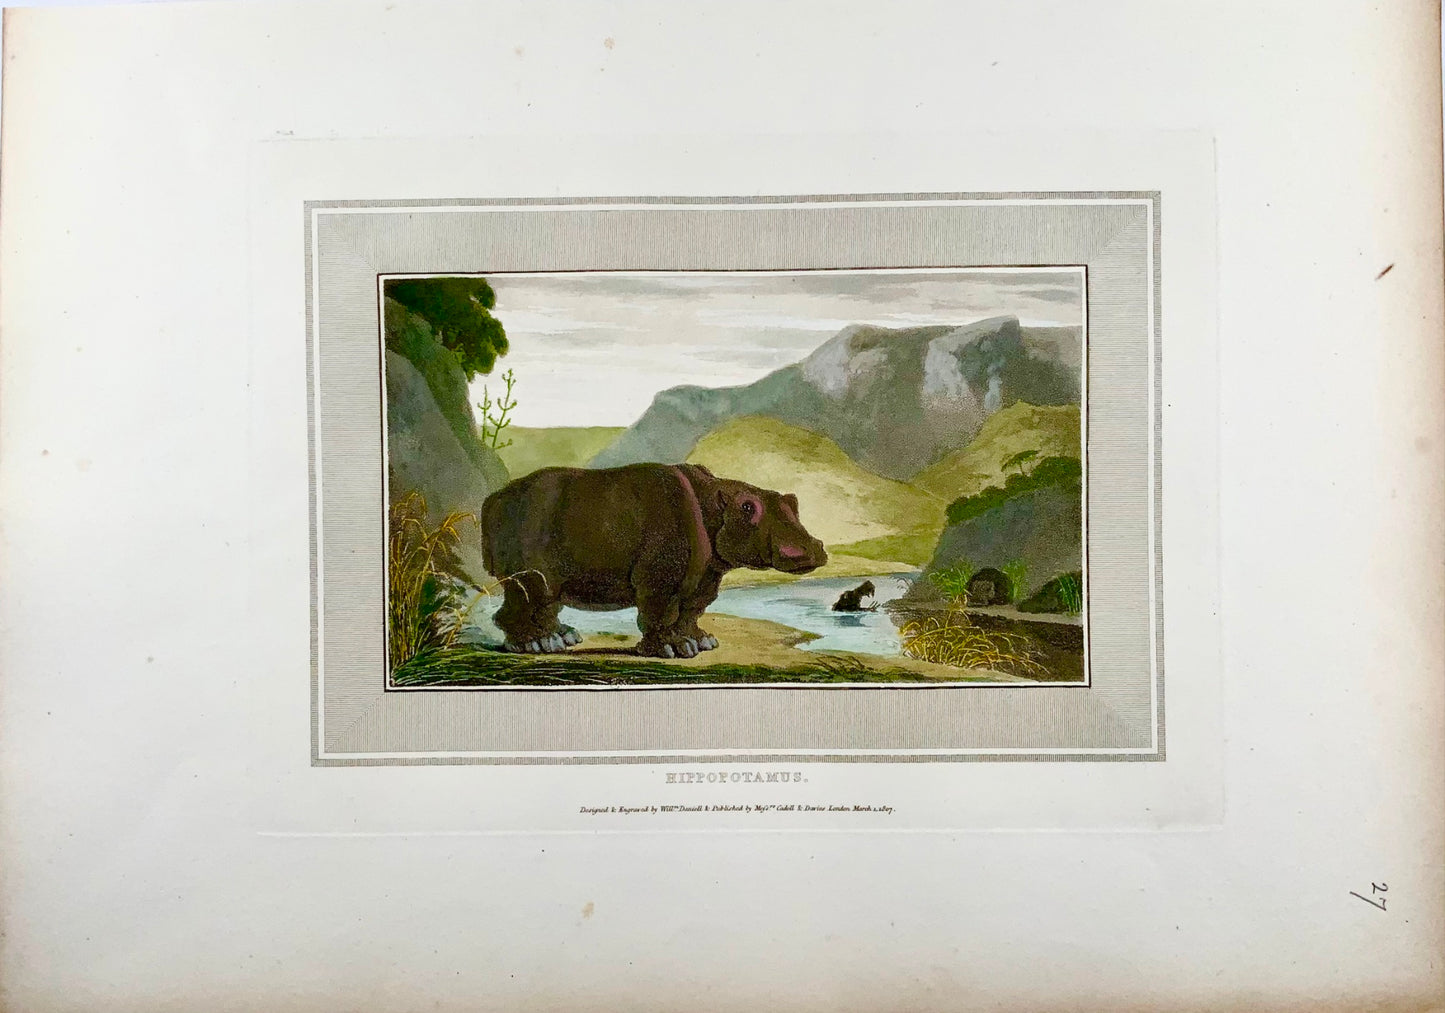 1809 William Daniell, Hippopotamus, mammal, hand coloured aquatint